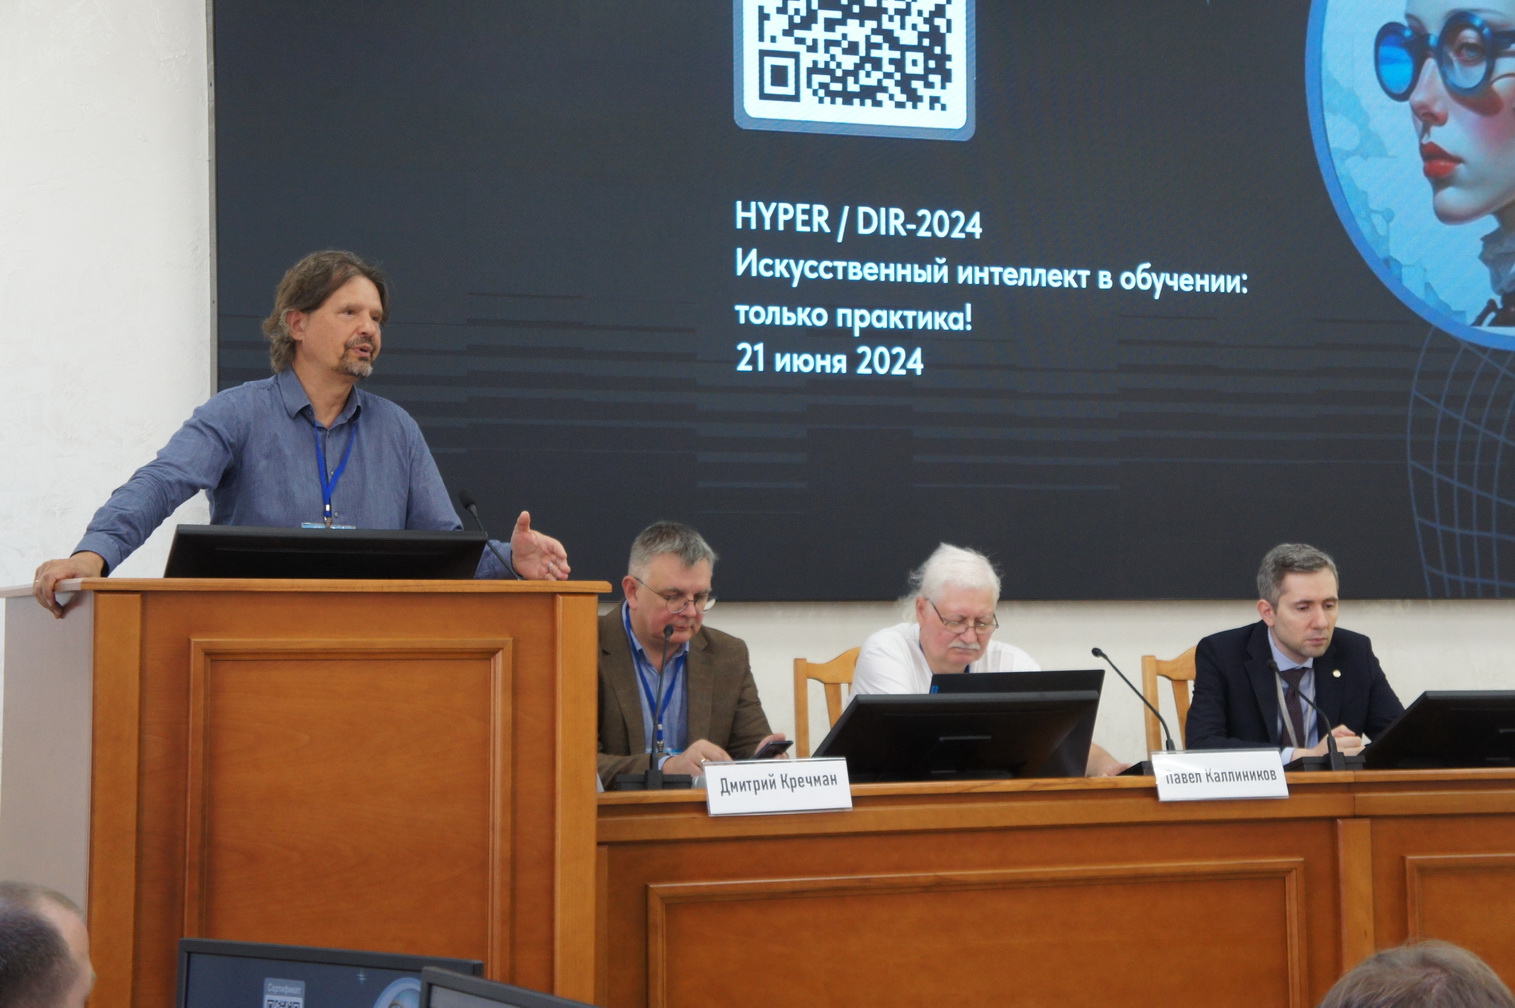 В Москве состоялась конференция HYPER/DIR-2024 о роли ИИ в обучении